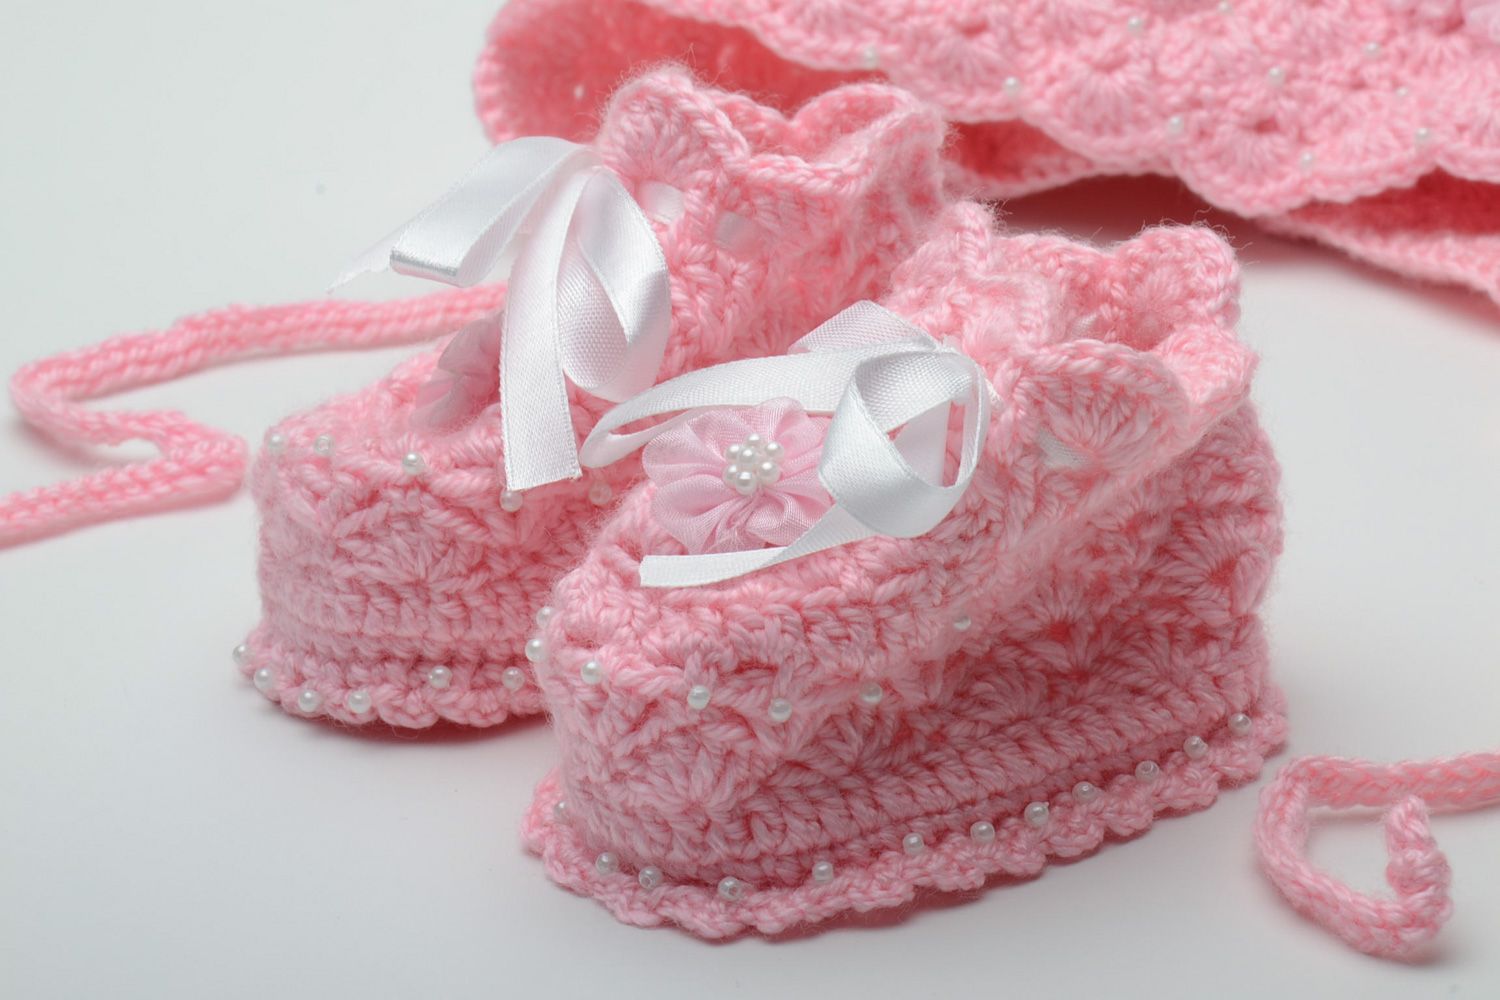 Chaussons et bonnet au crochet pour bébé faits main roses chauds originaux photo 2